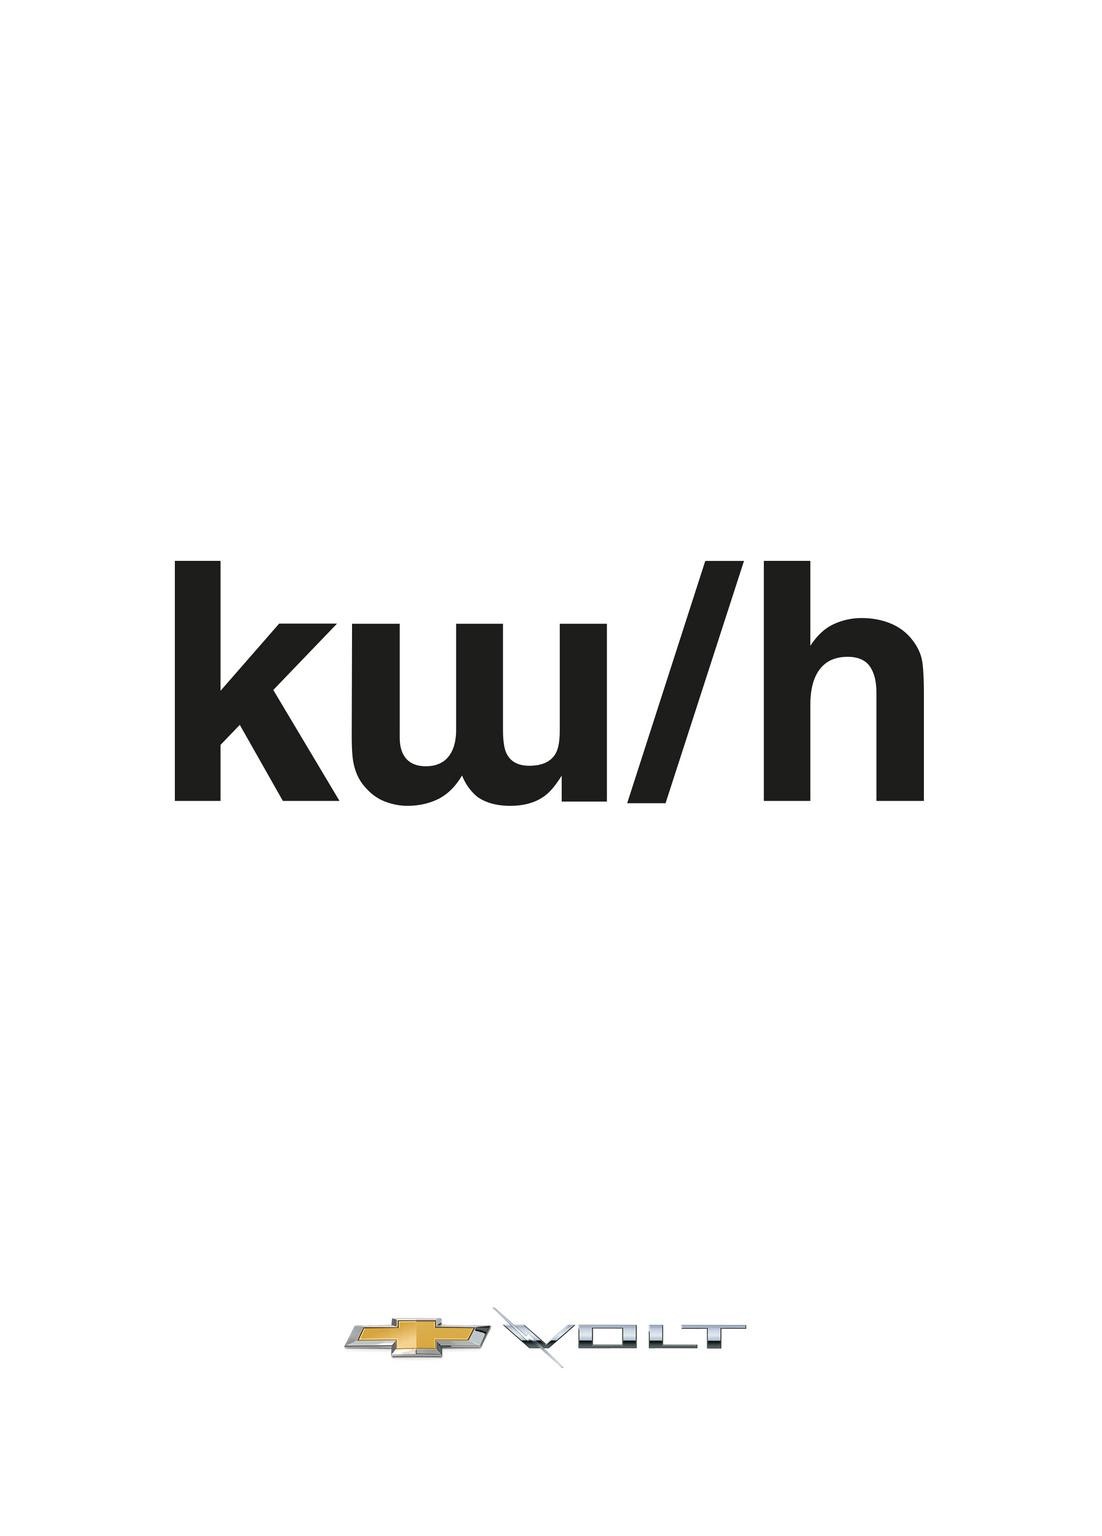 Kw/H